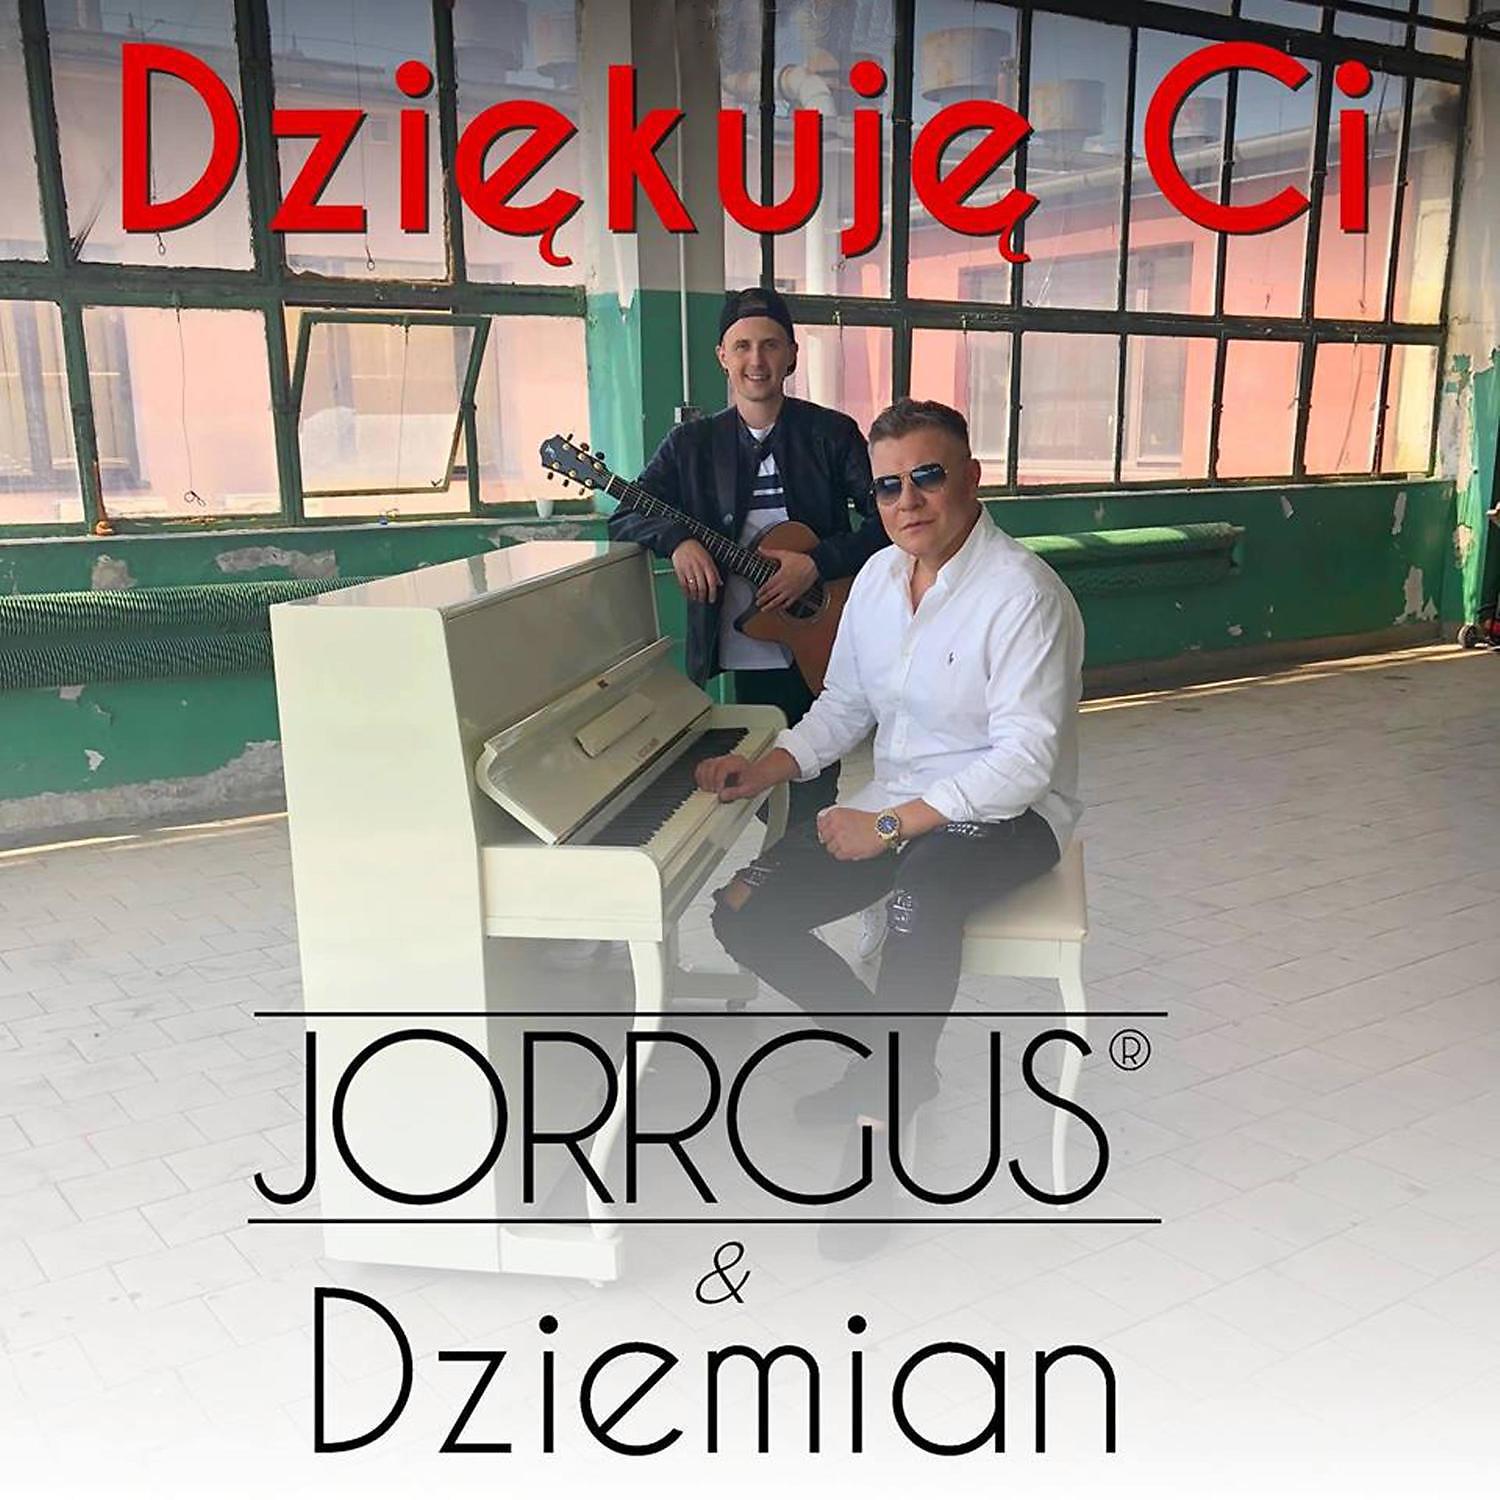 Постер альбома Dziekuje Ci